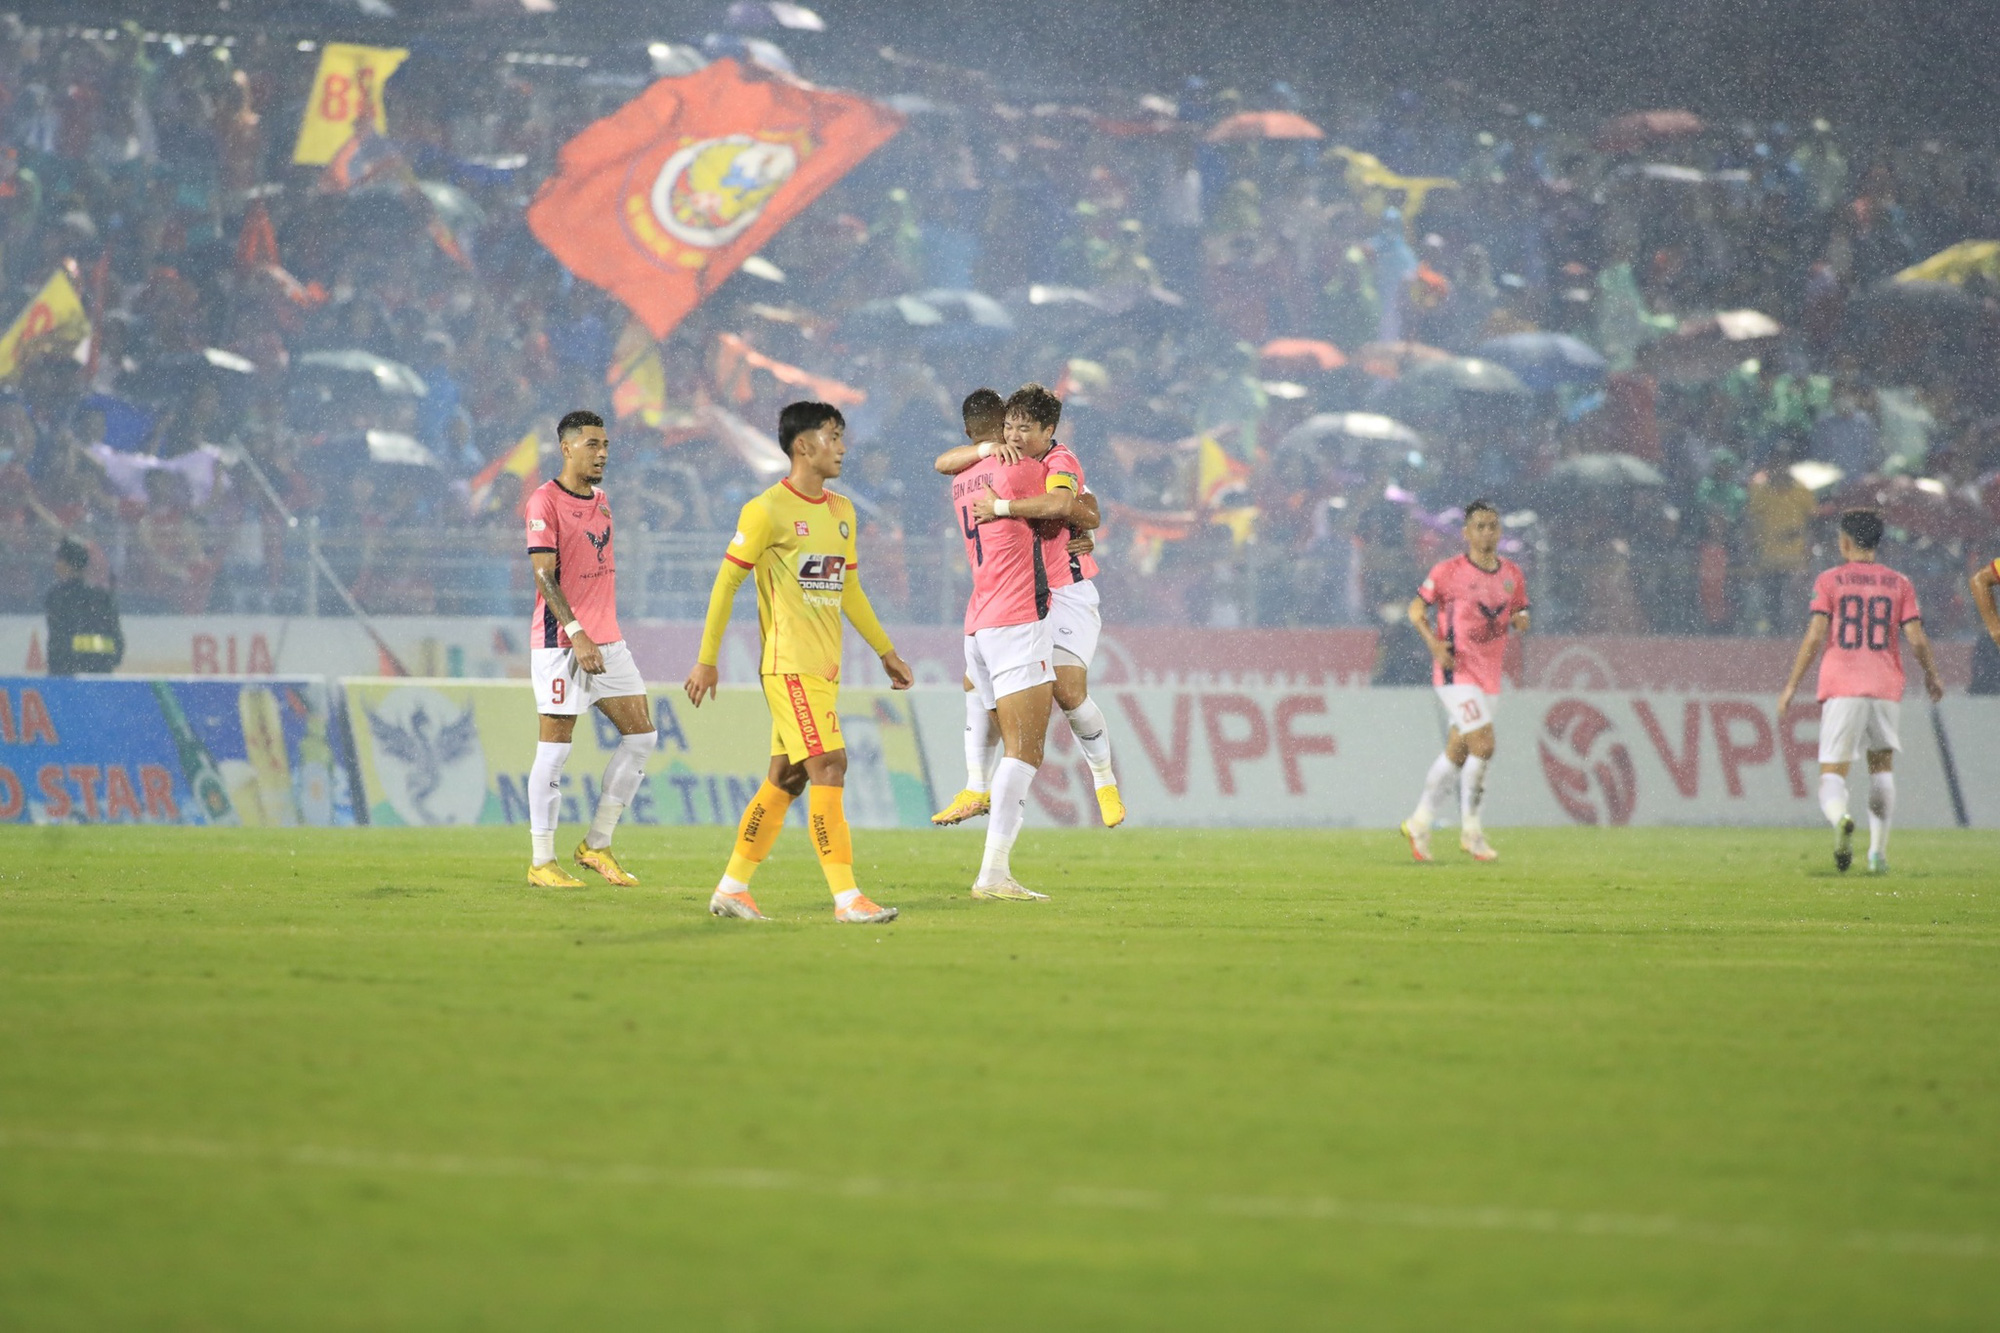 Hạ màn V.League 1-2022: Topenland Bình Định nhận HCĐ, Sài Gòn FC xuống hạng